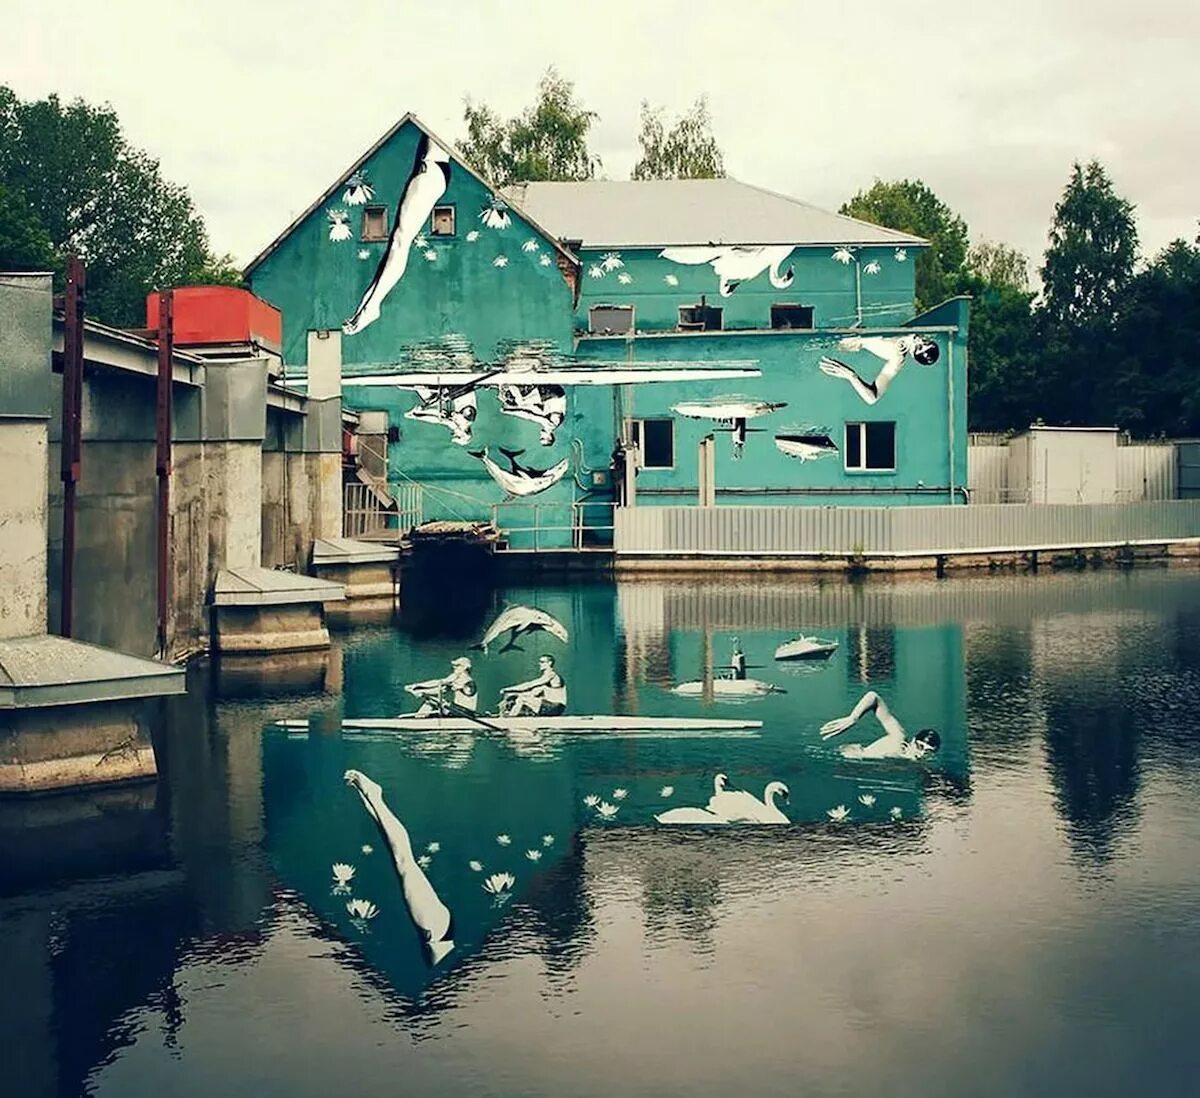 Art is reflection. Отражение дома в воде. Отражение здания в воде. Граффити отражение в воде. Отражение домов в воде фото.